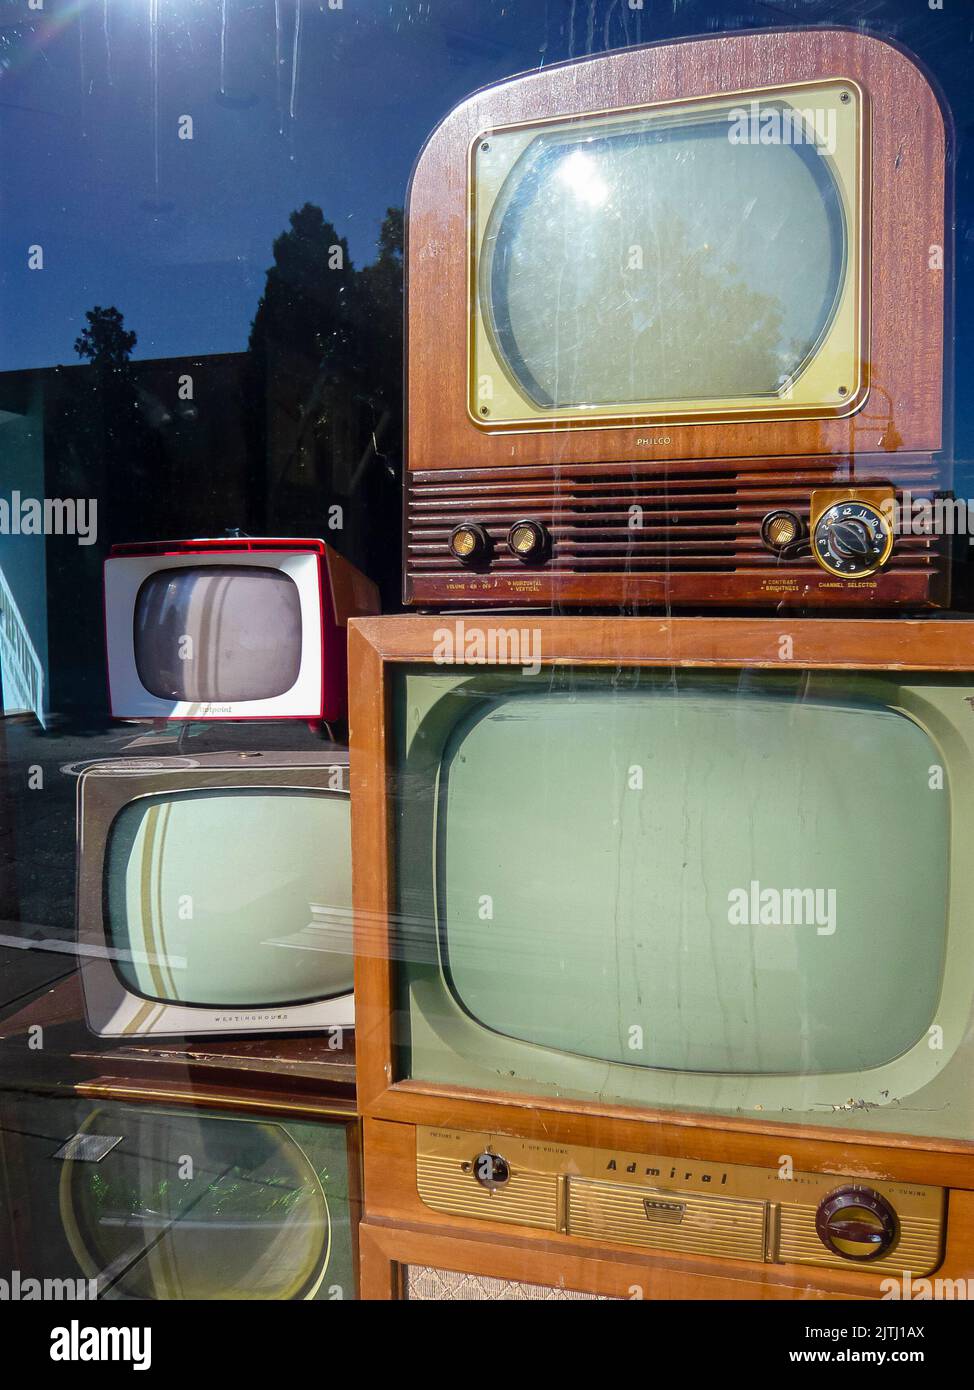 Tele tv immagini e fotografie stock ad alta risoluzione - Alamy